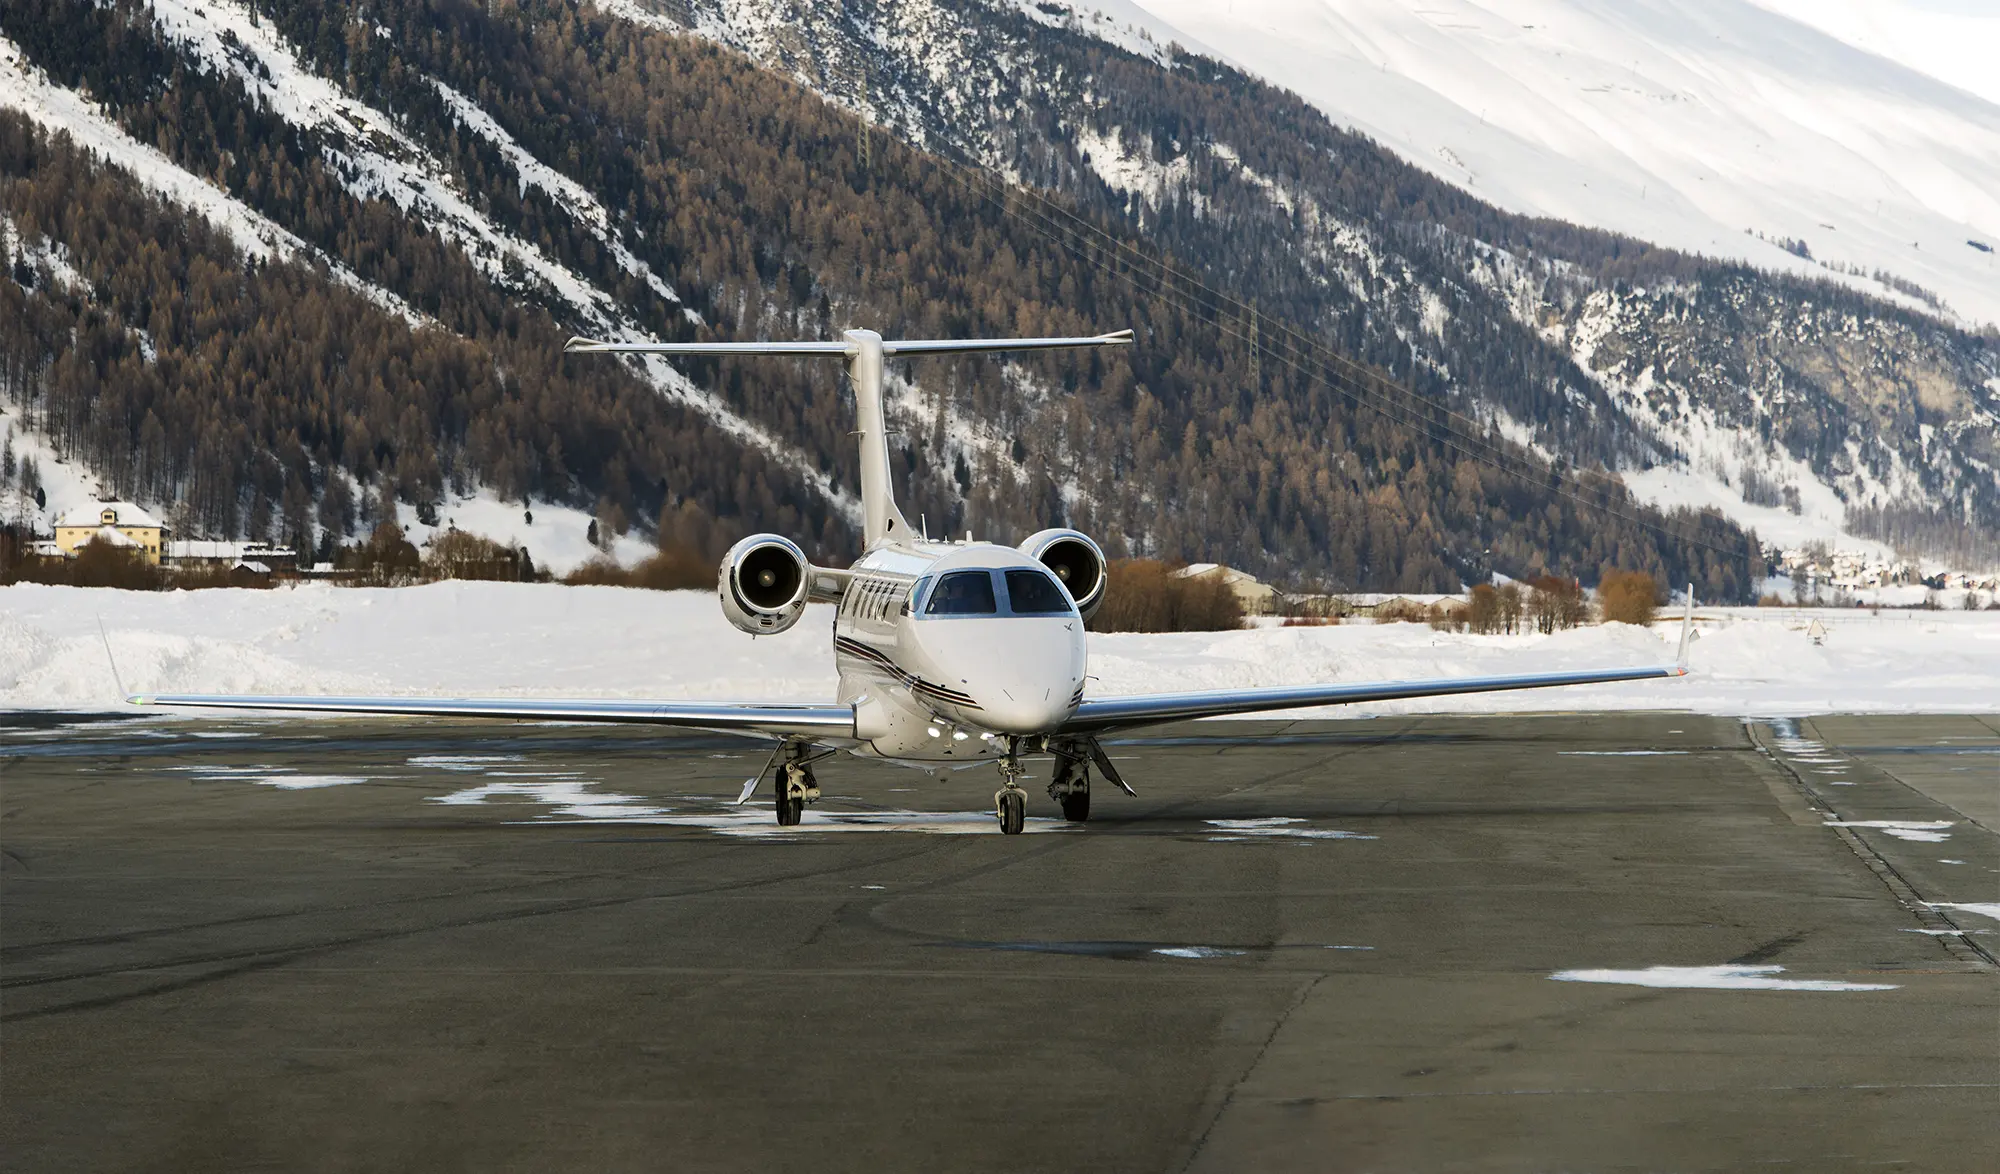 Jet privé sur le tarmac de l'aéroport de Saint-Moritz